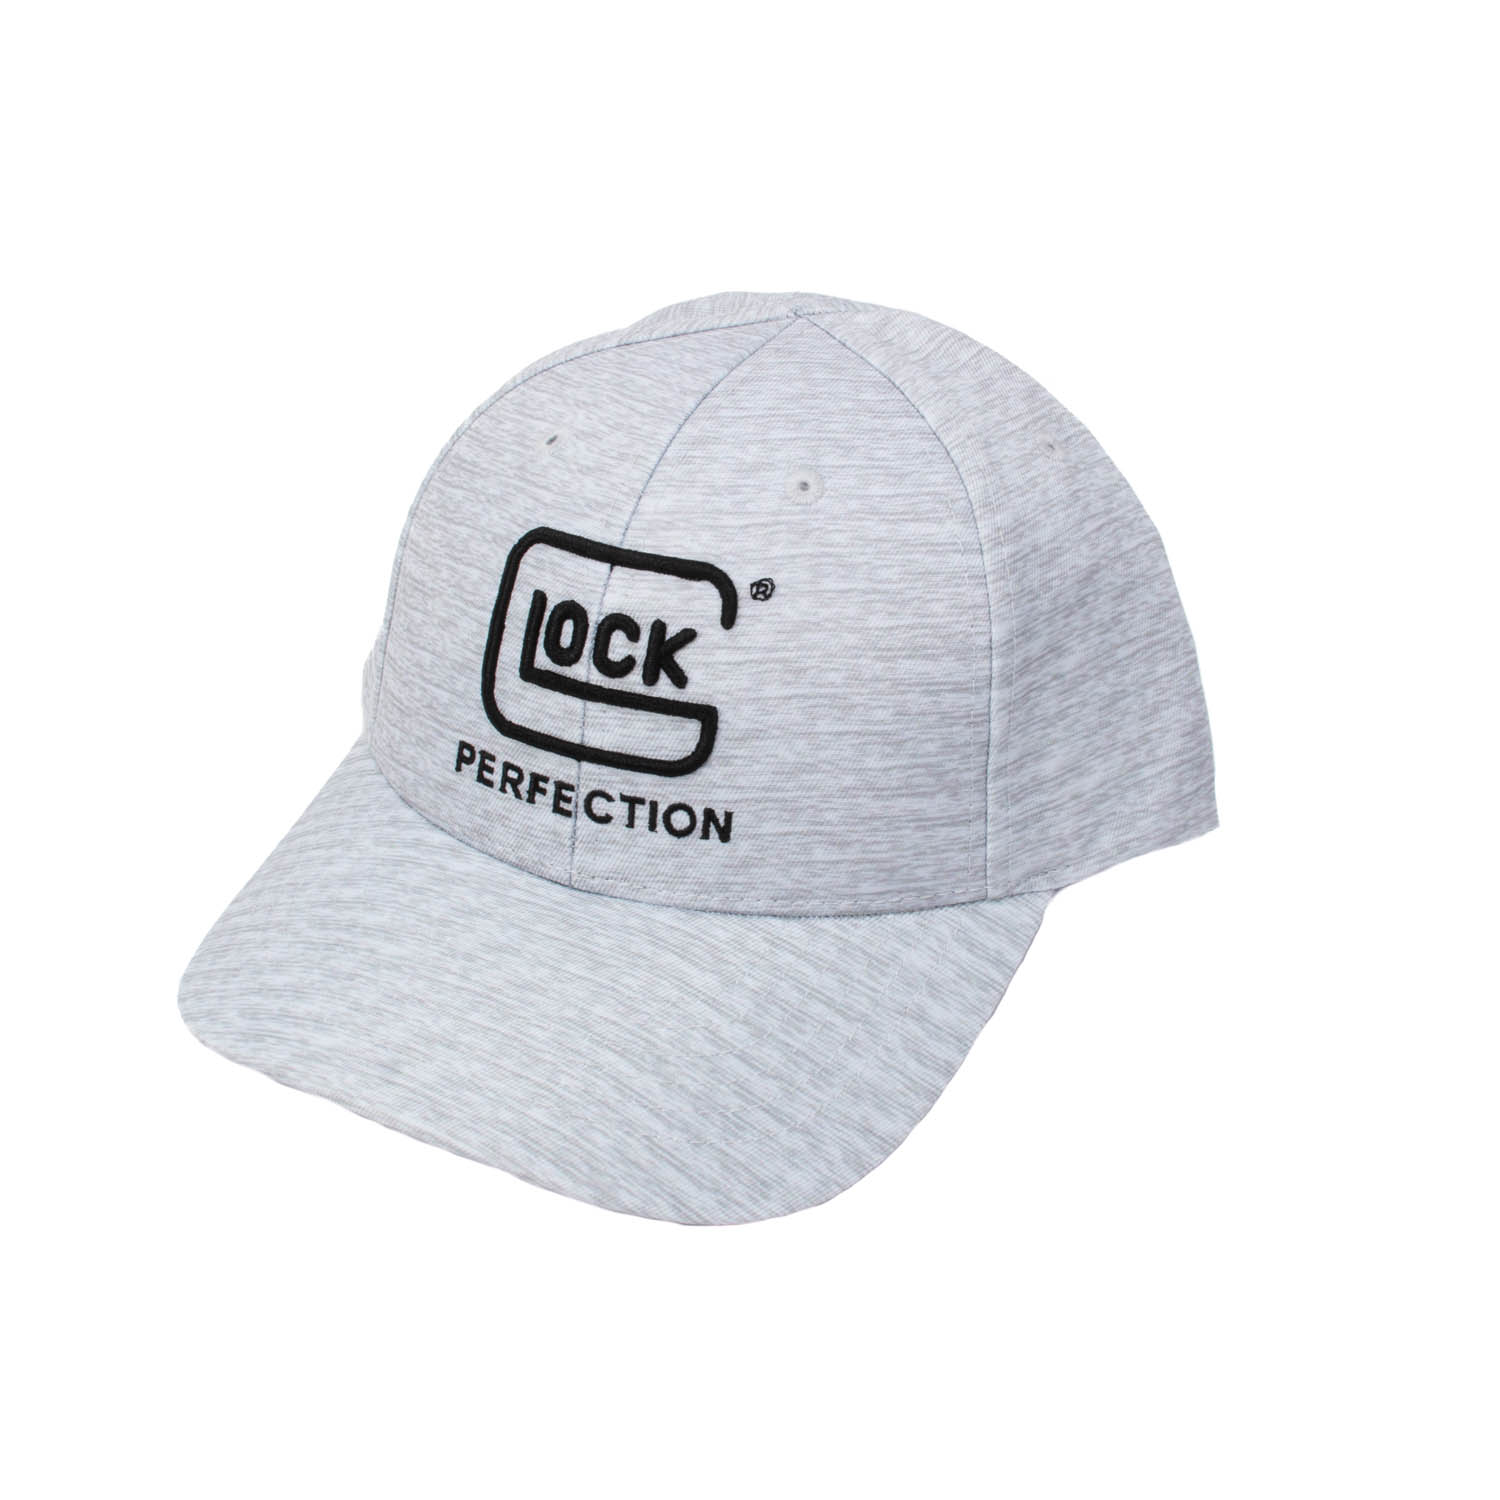 Glock Solar Hat, Grey: MGW